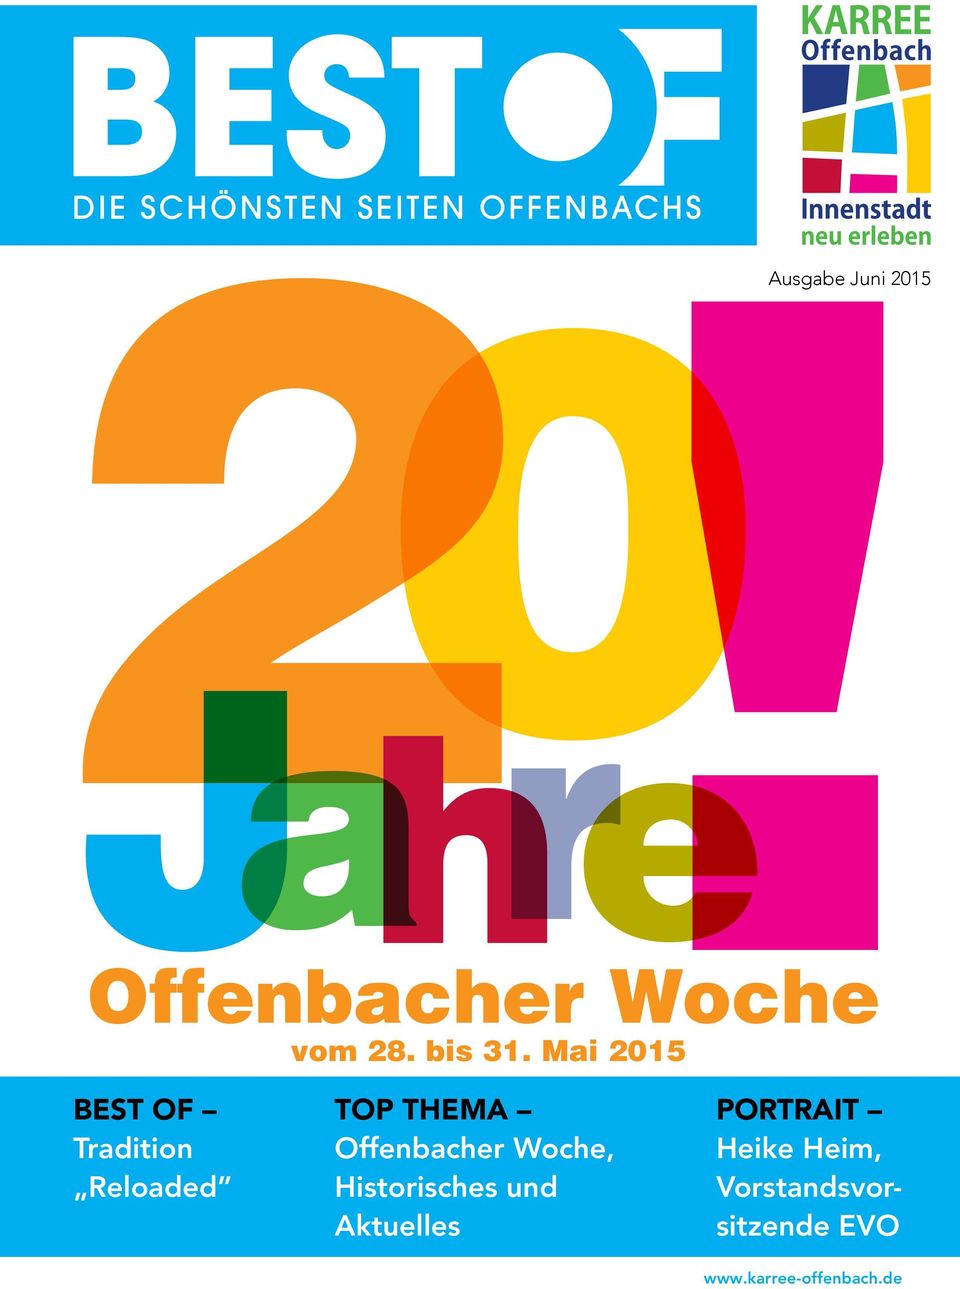 Top Thema Offenbacher Woche, Historisches und